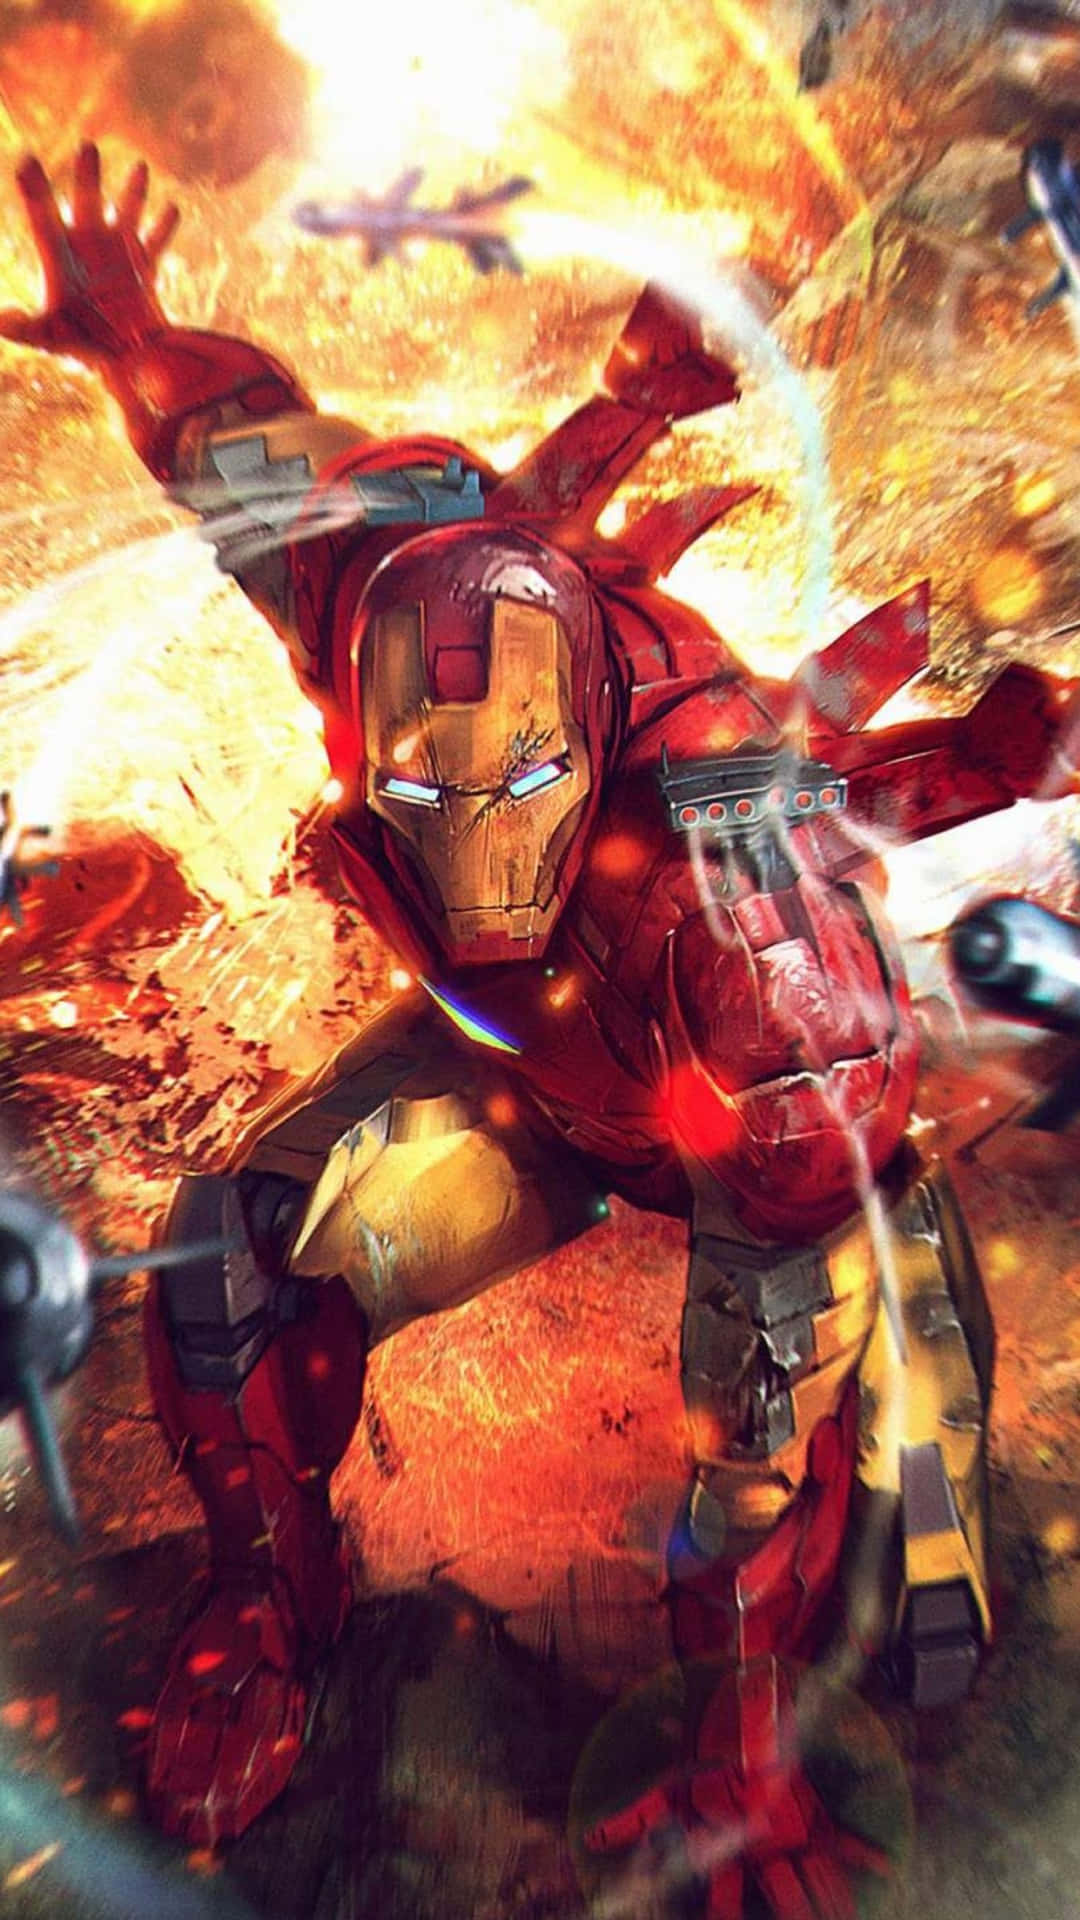 Tony Stark Wielding Iron Man Weapons Wallpaper